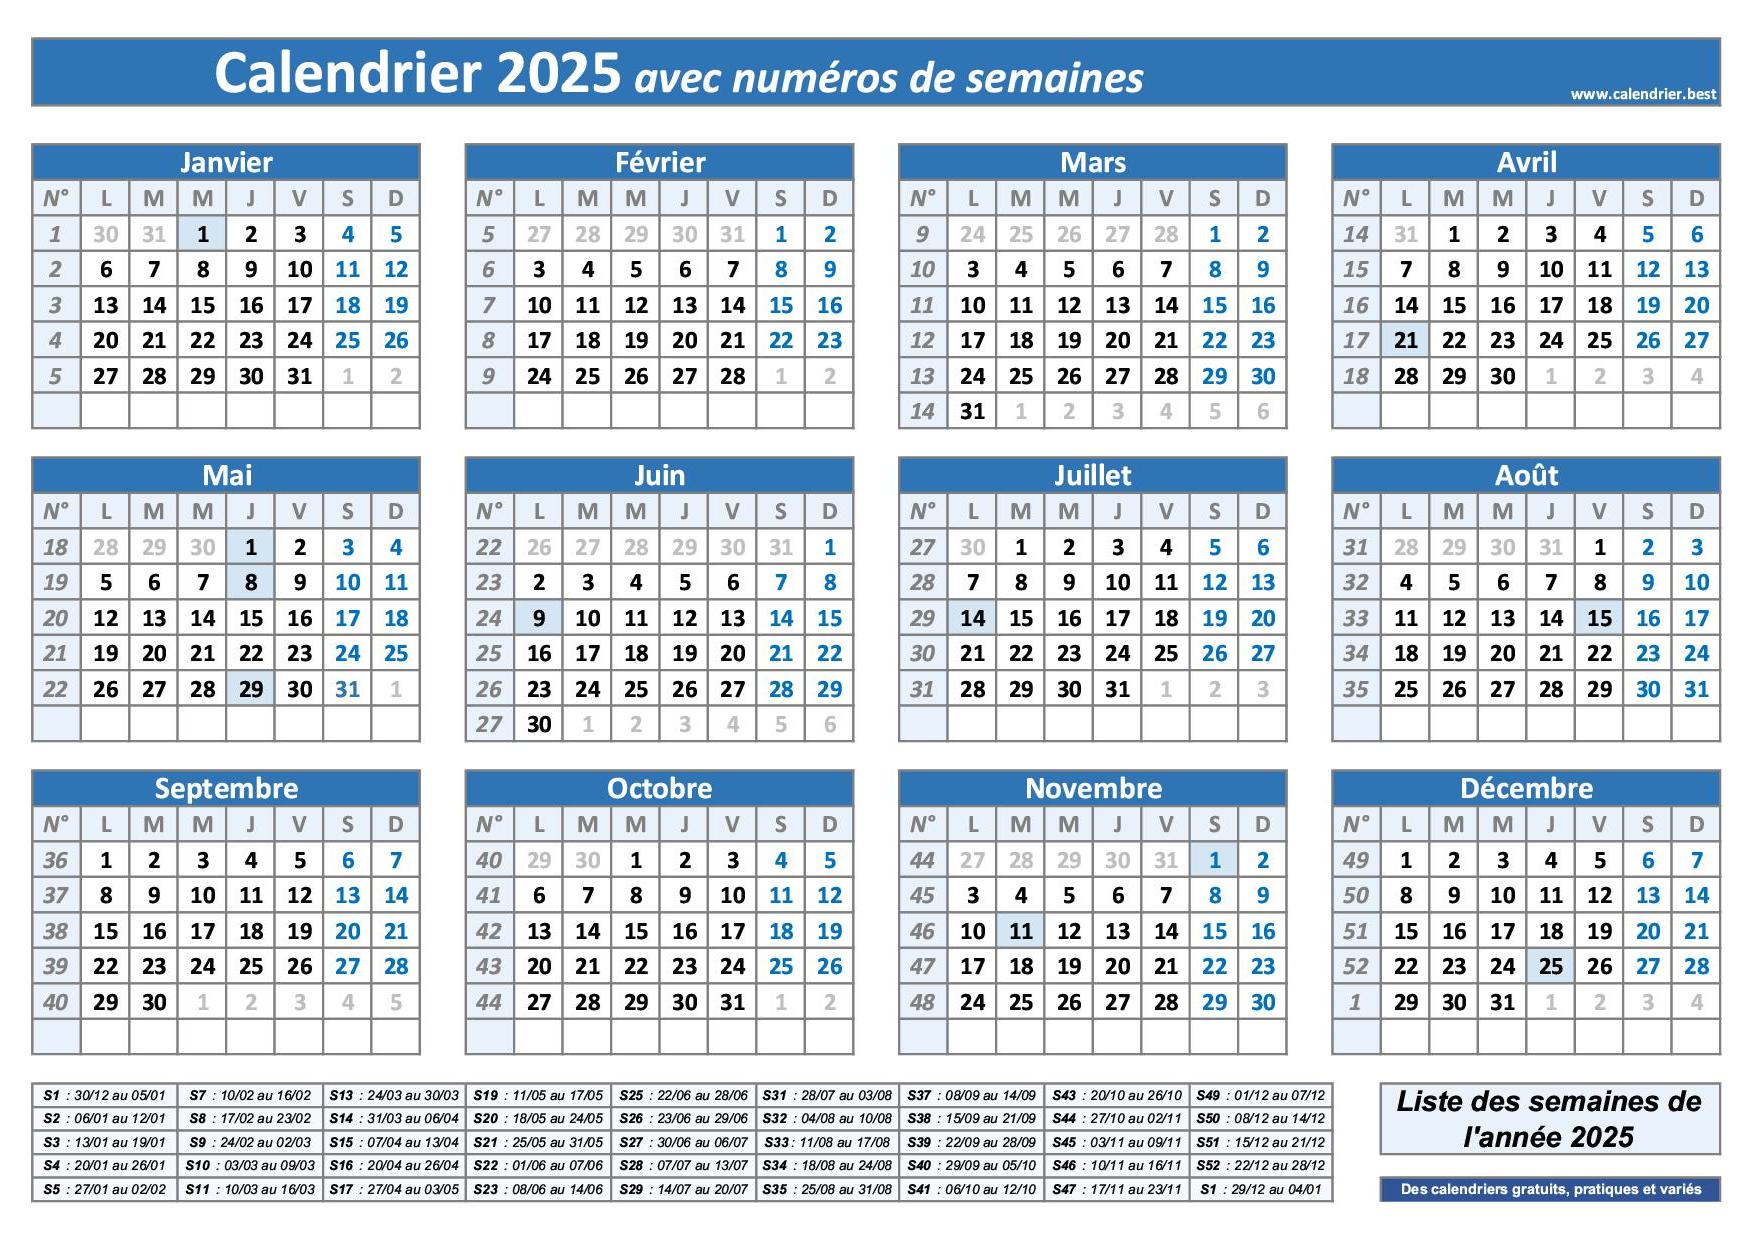 Semaine 1 2025 : dates, calendrier et planning hebdomadaire à imprimer